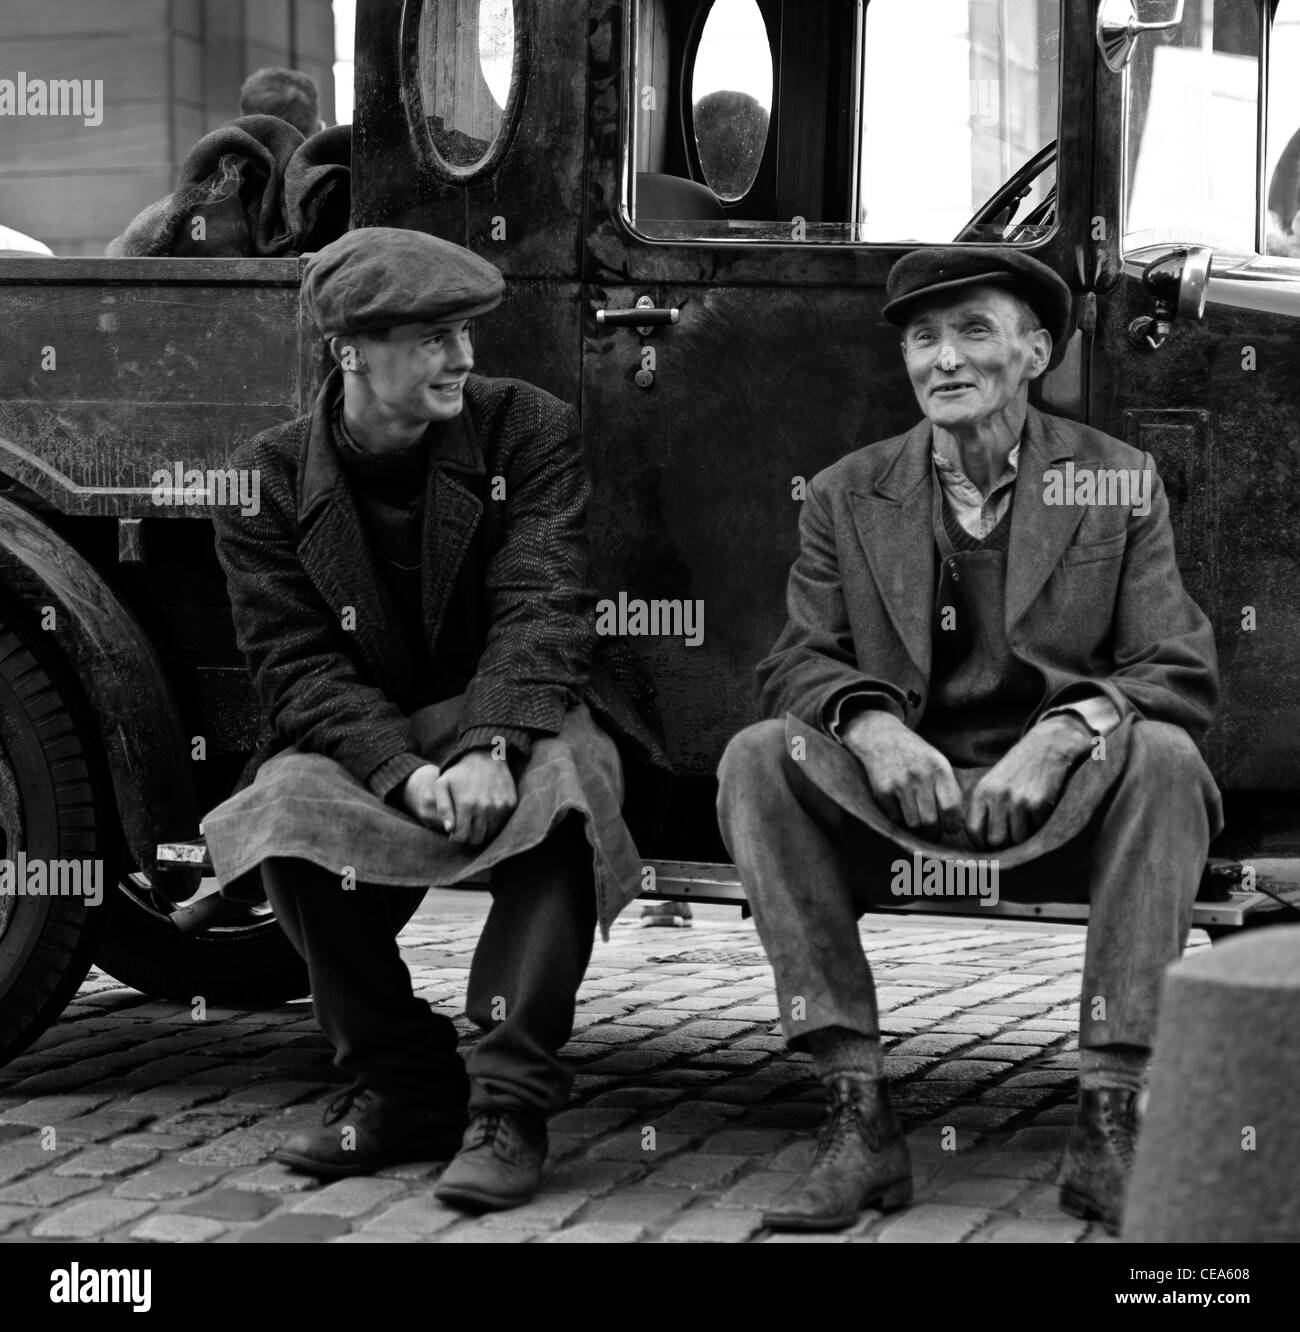 Hombre y niño en vintage trajes vestidos como coalmen sentado en el paso del viejo camión Edimburgo Scotland Reino Unido monocromo Foto de stock